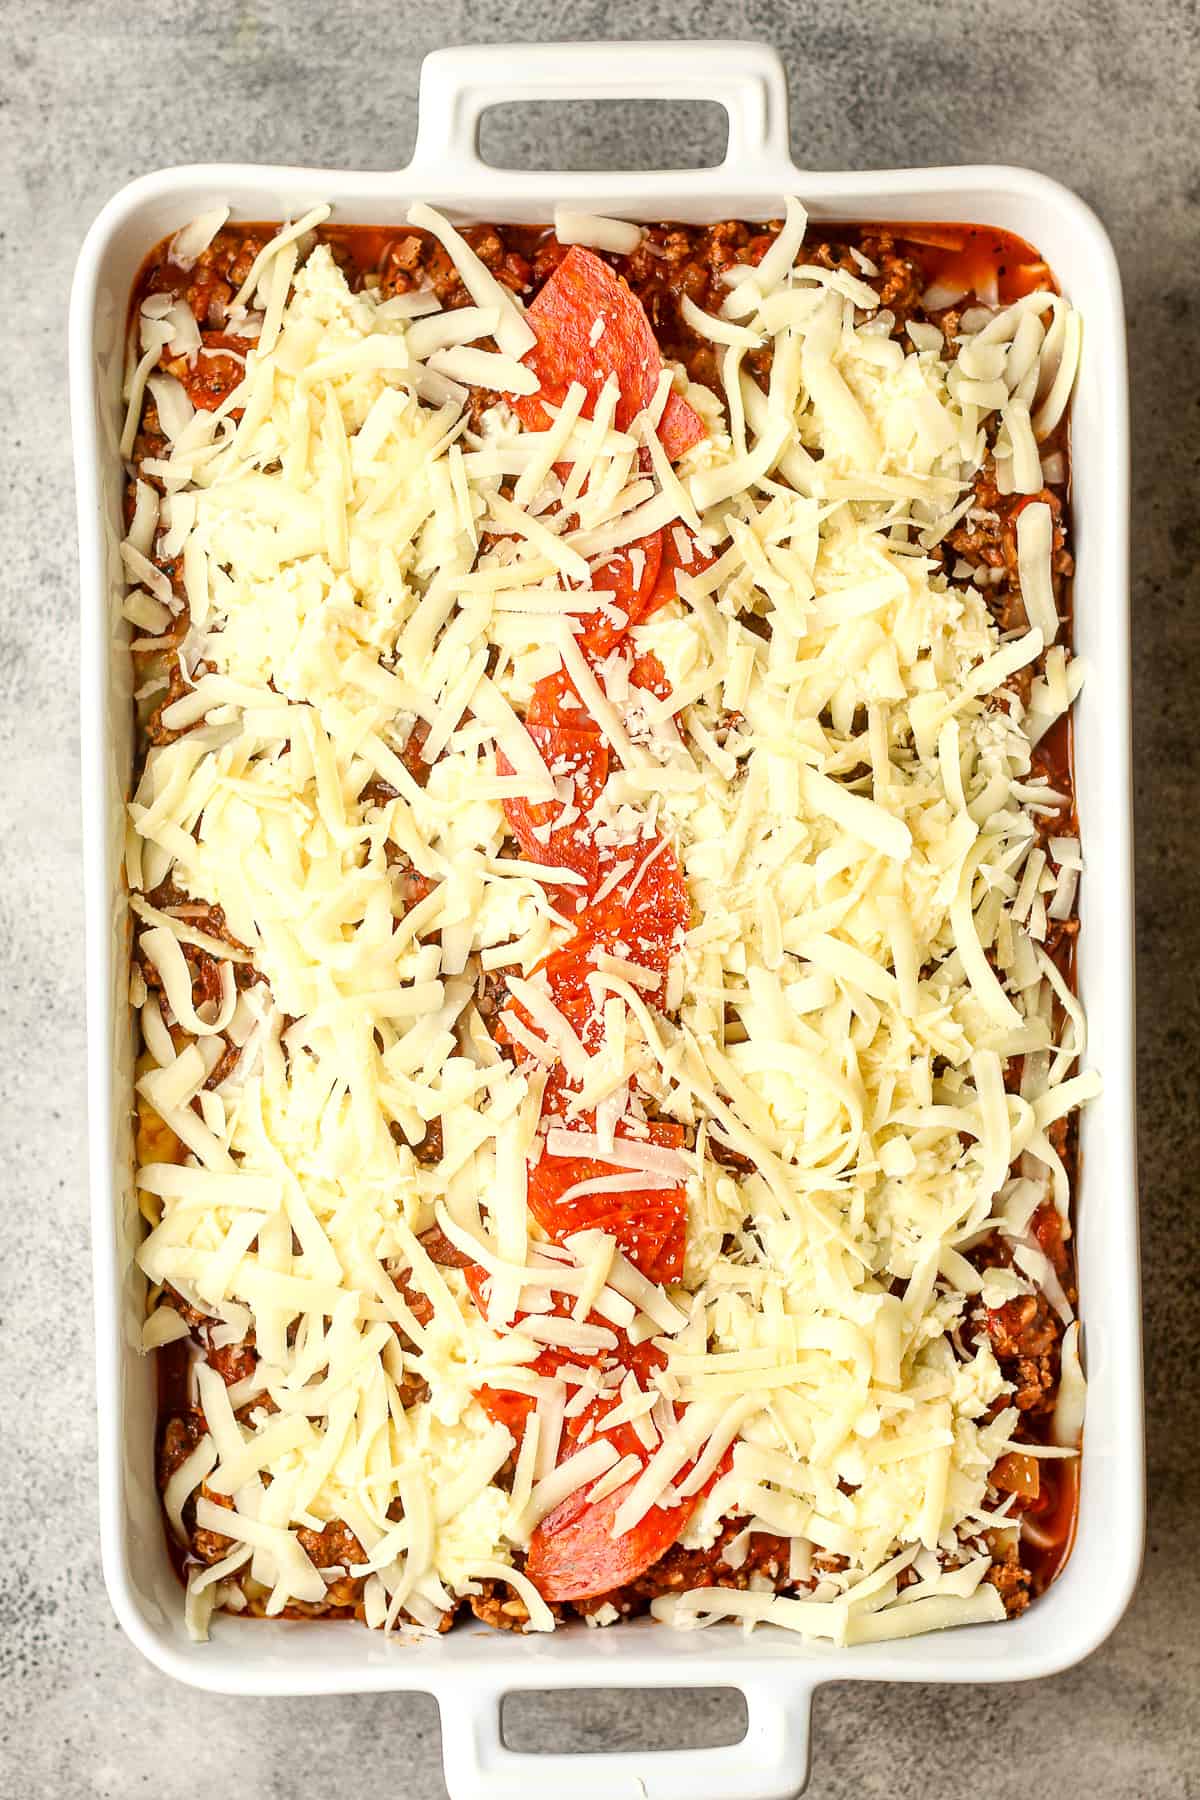 A pan of lasagna before baking.